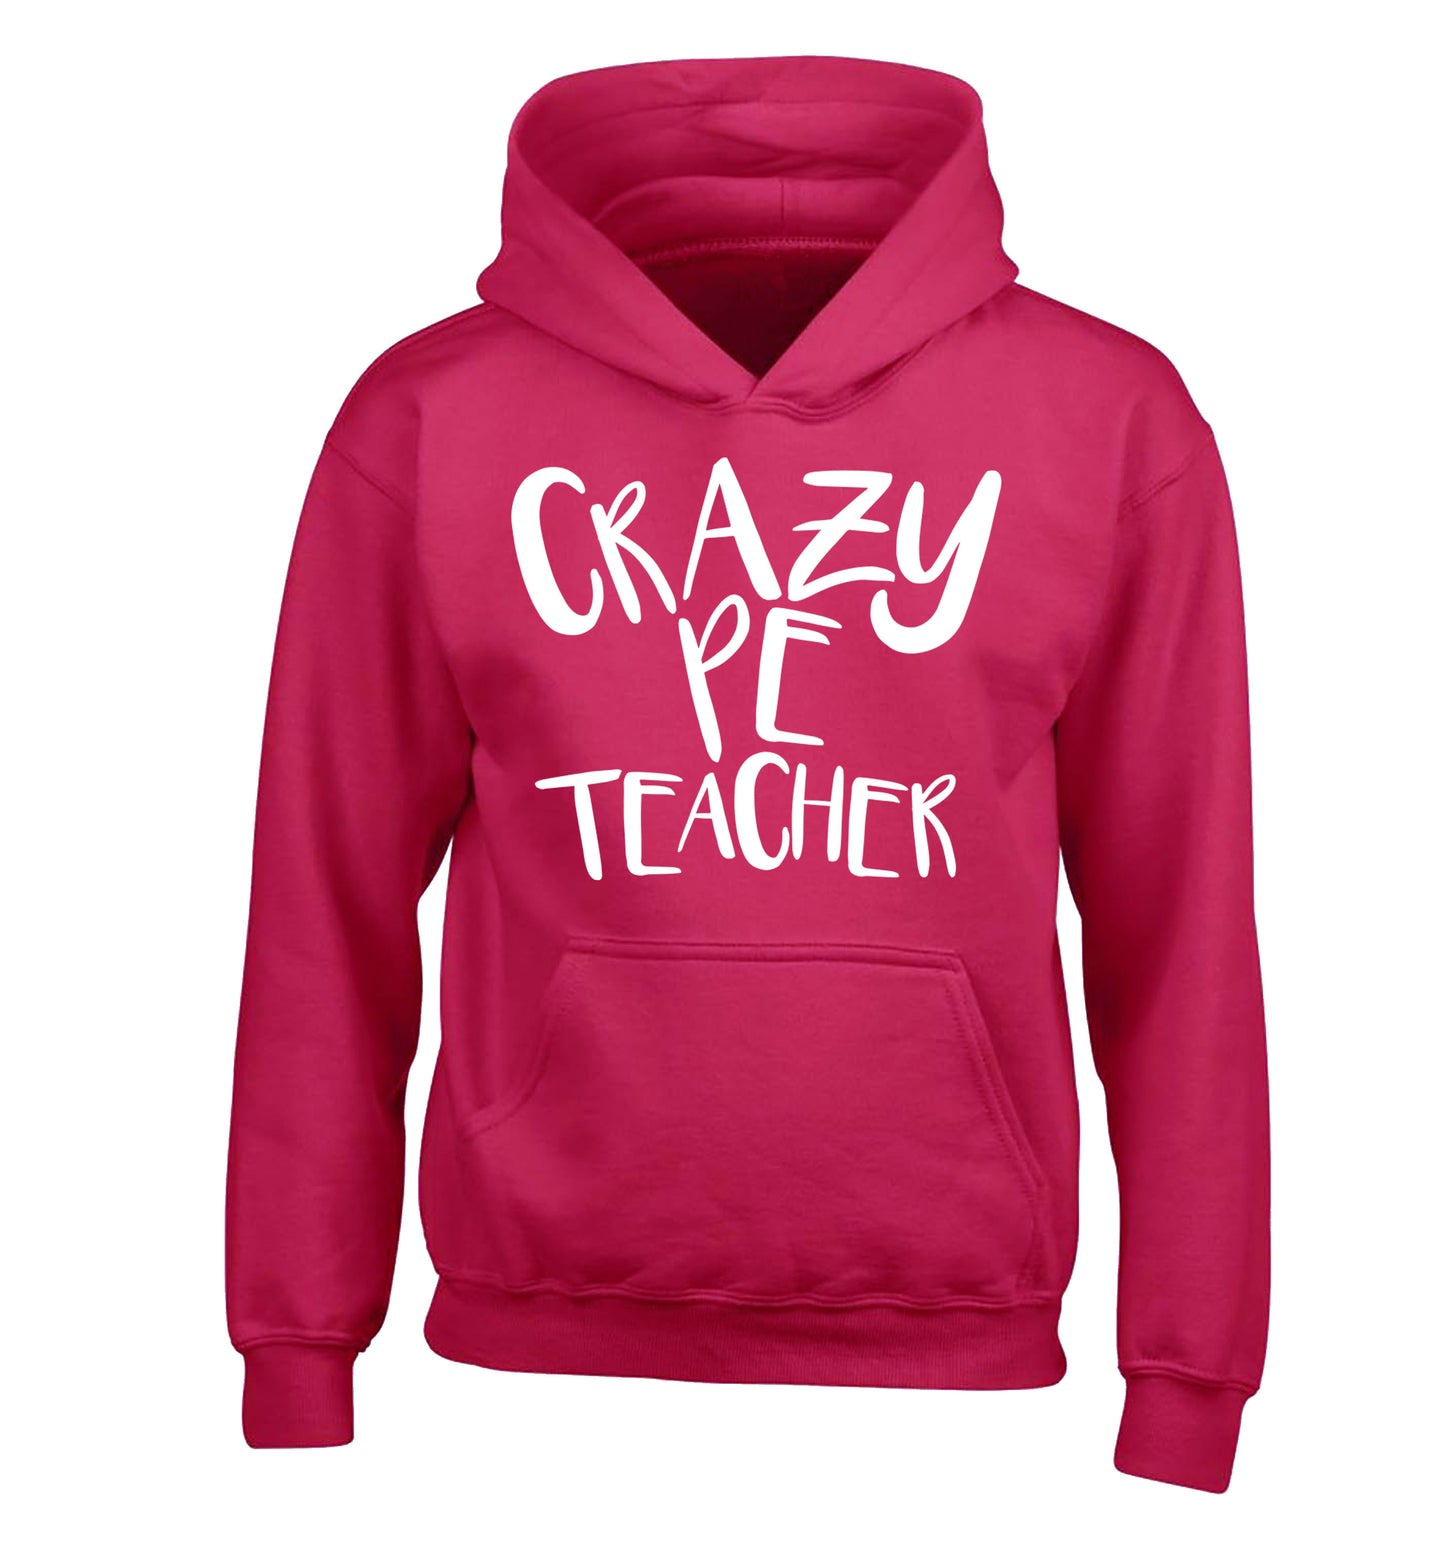 Crazy PE teacher children's pink hoodie 12-13 Years